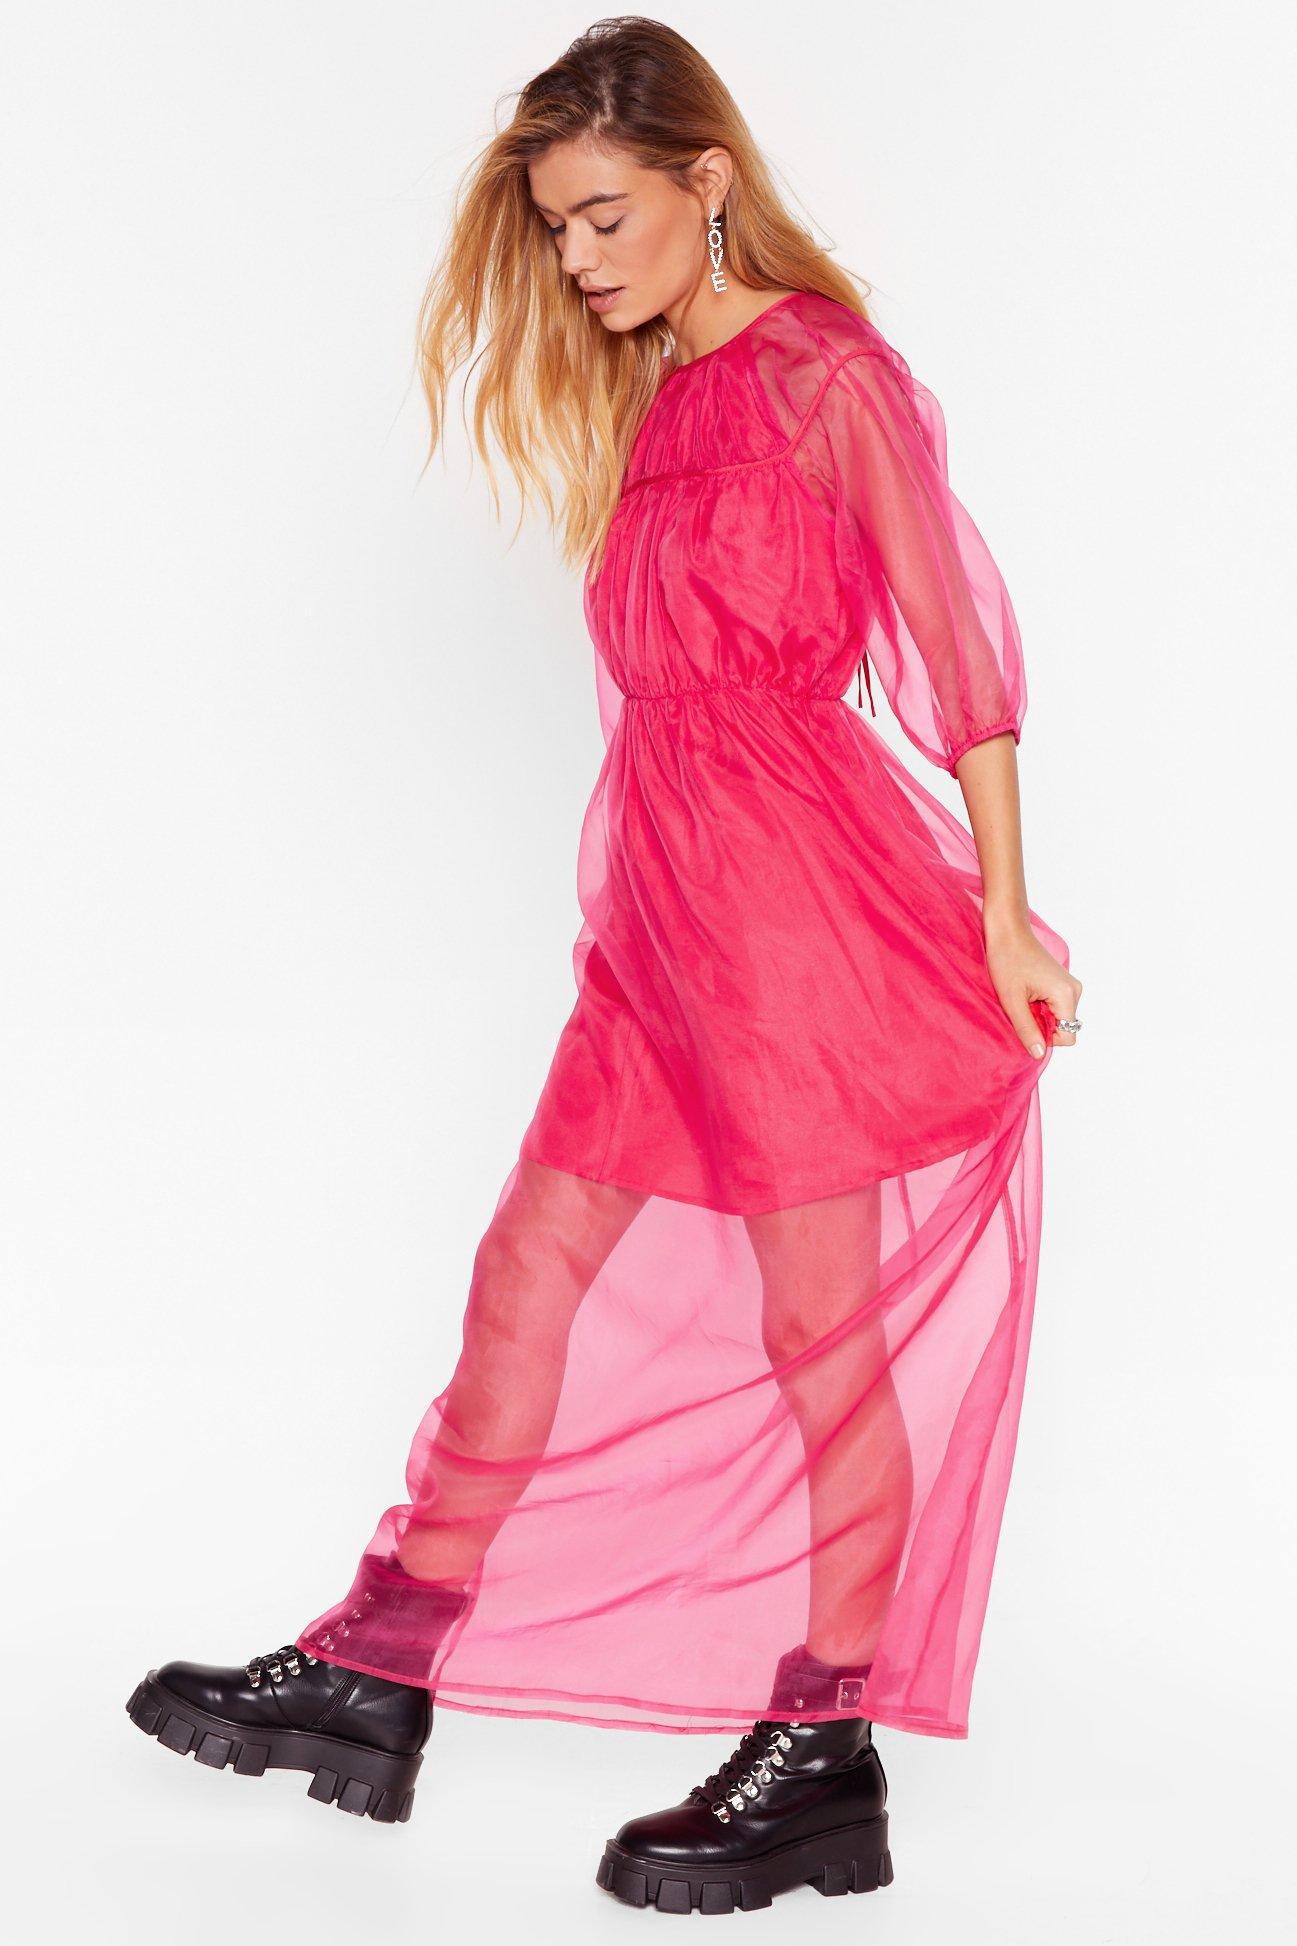 hot pink midi dress